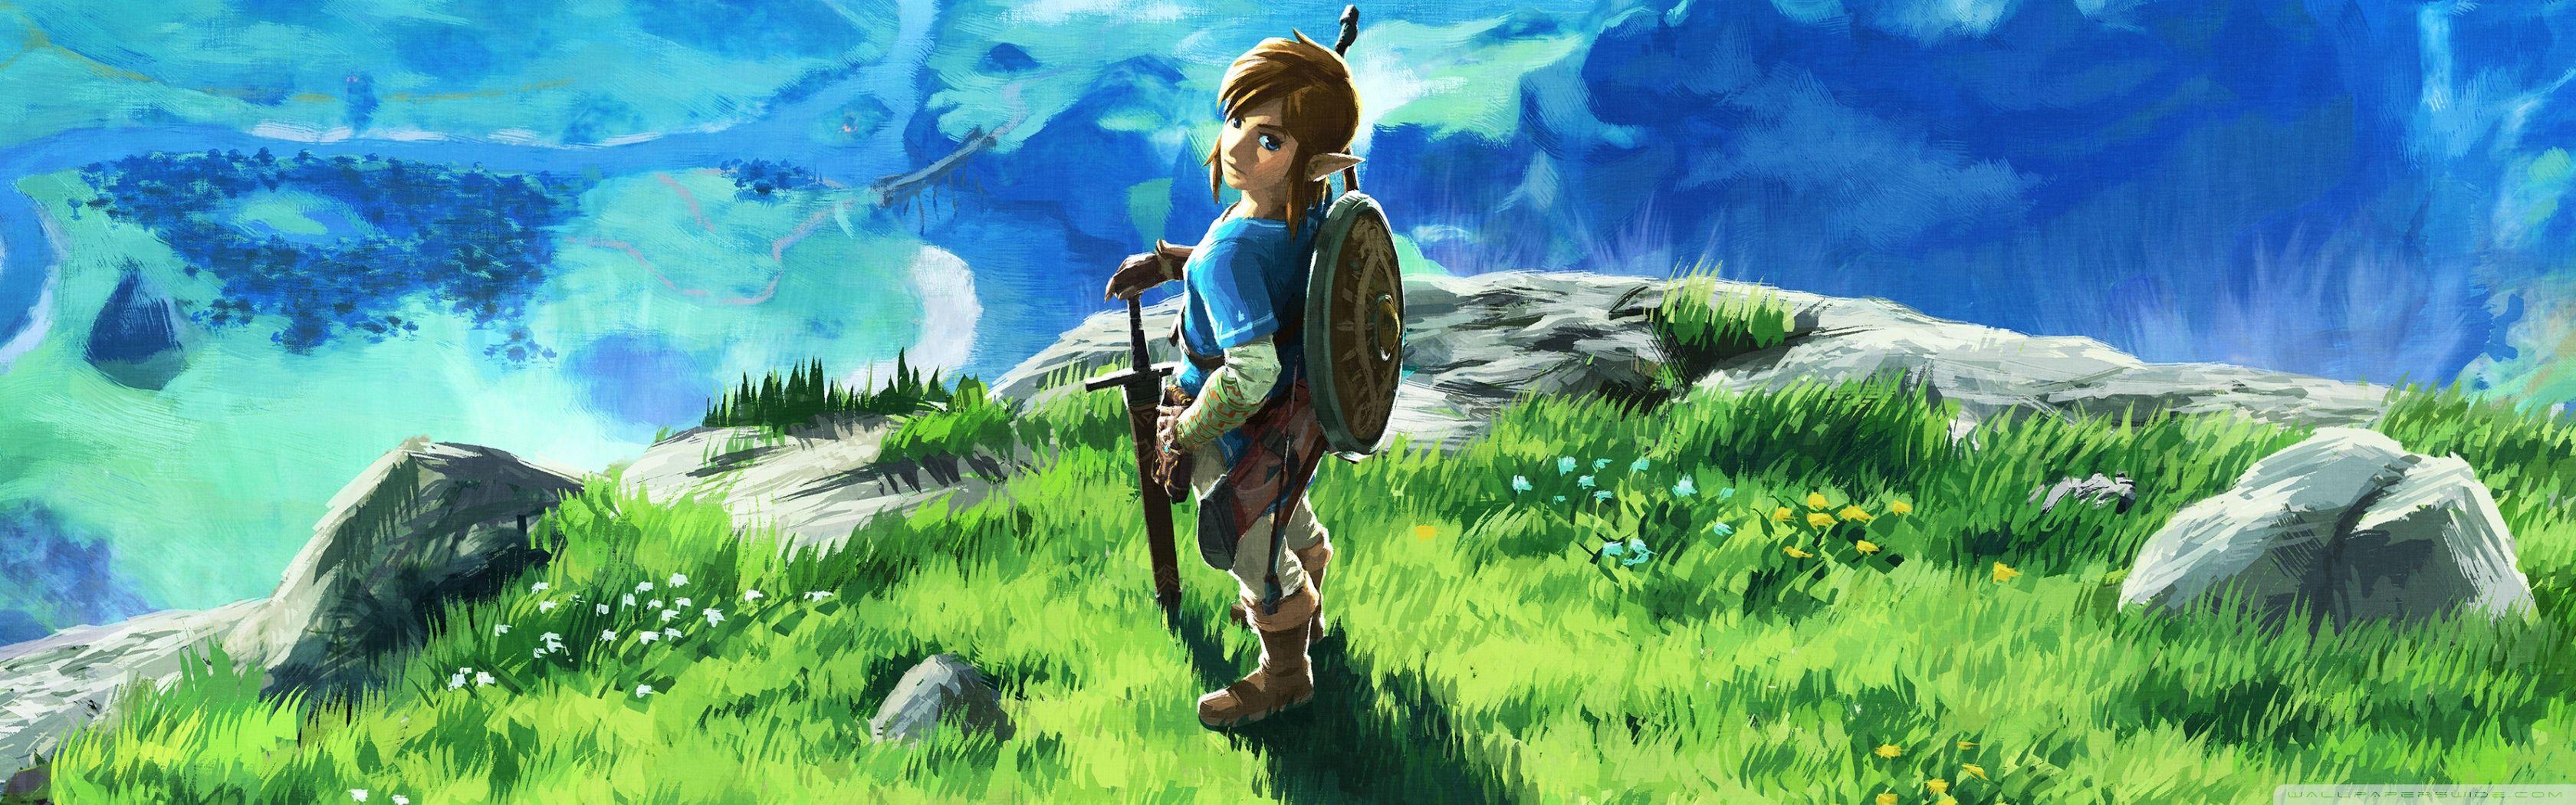 Legend Of Zelda Dual Screen Wallpapers Top Free Legend Of Zelda